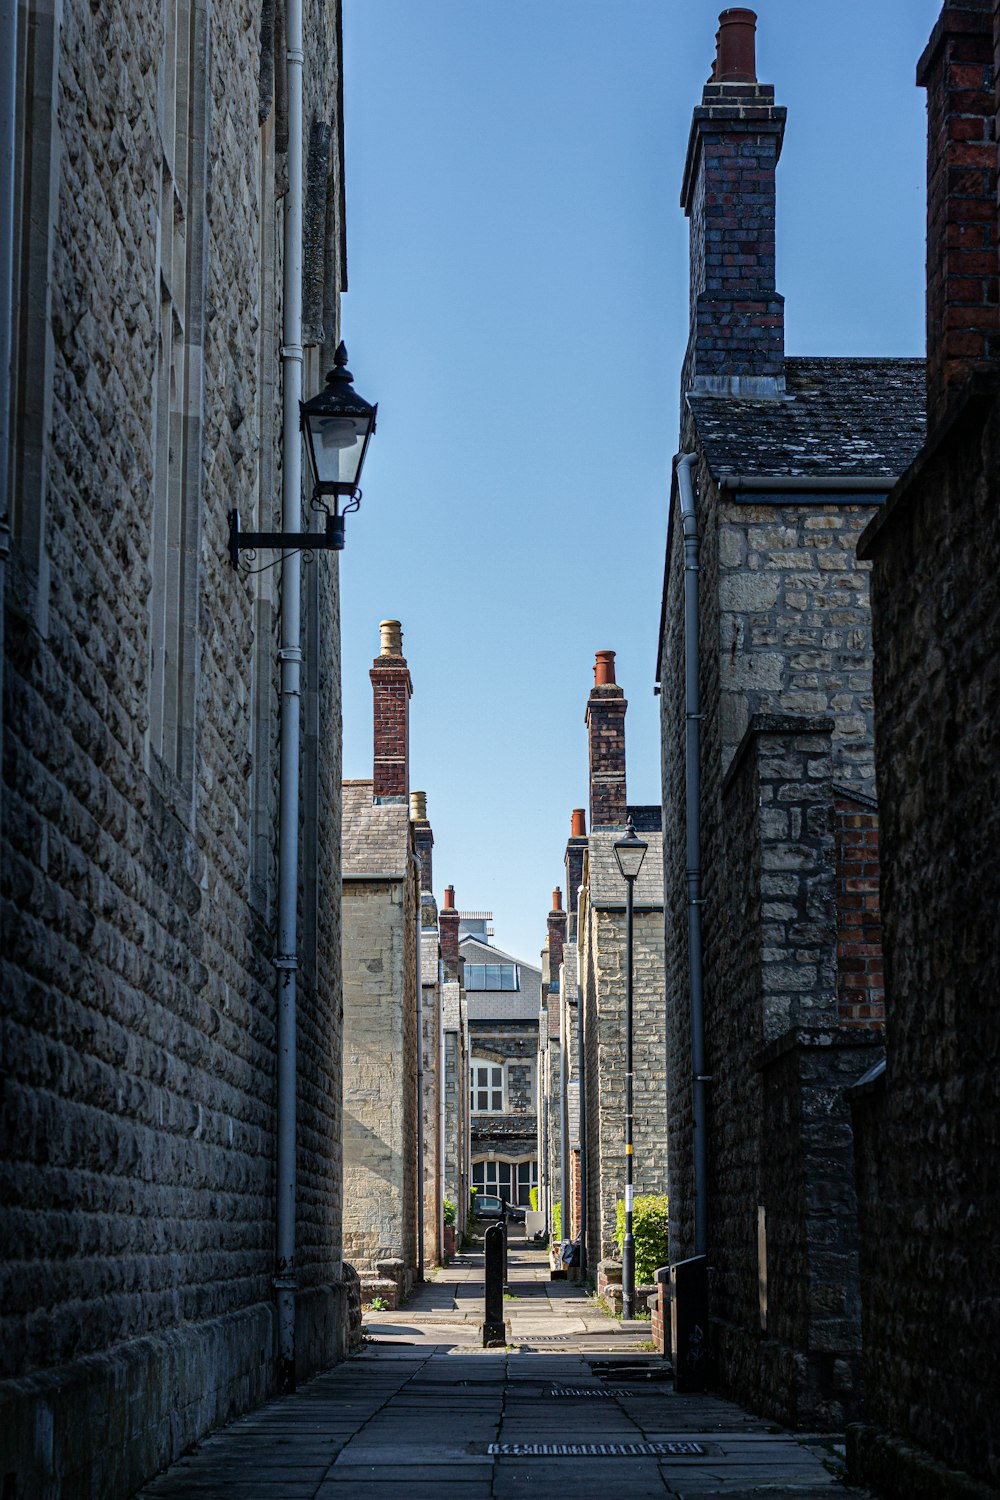 a narrow alley way between two brick buildings